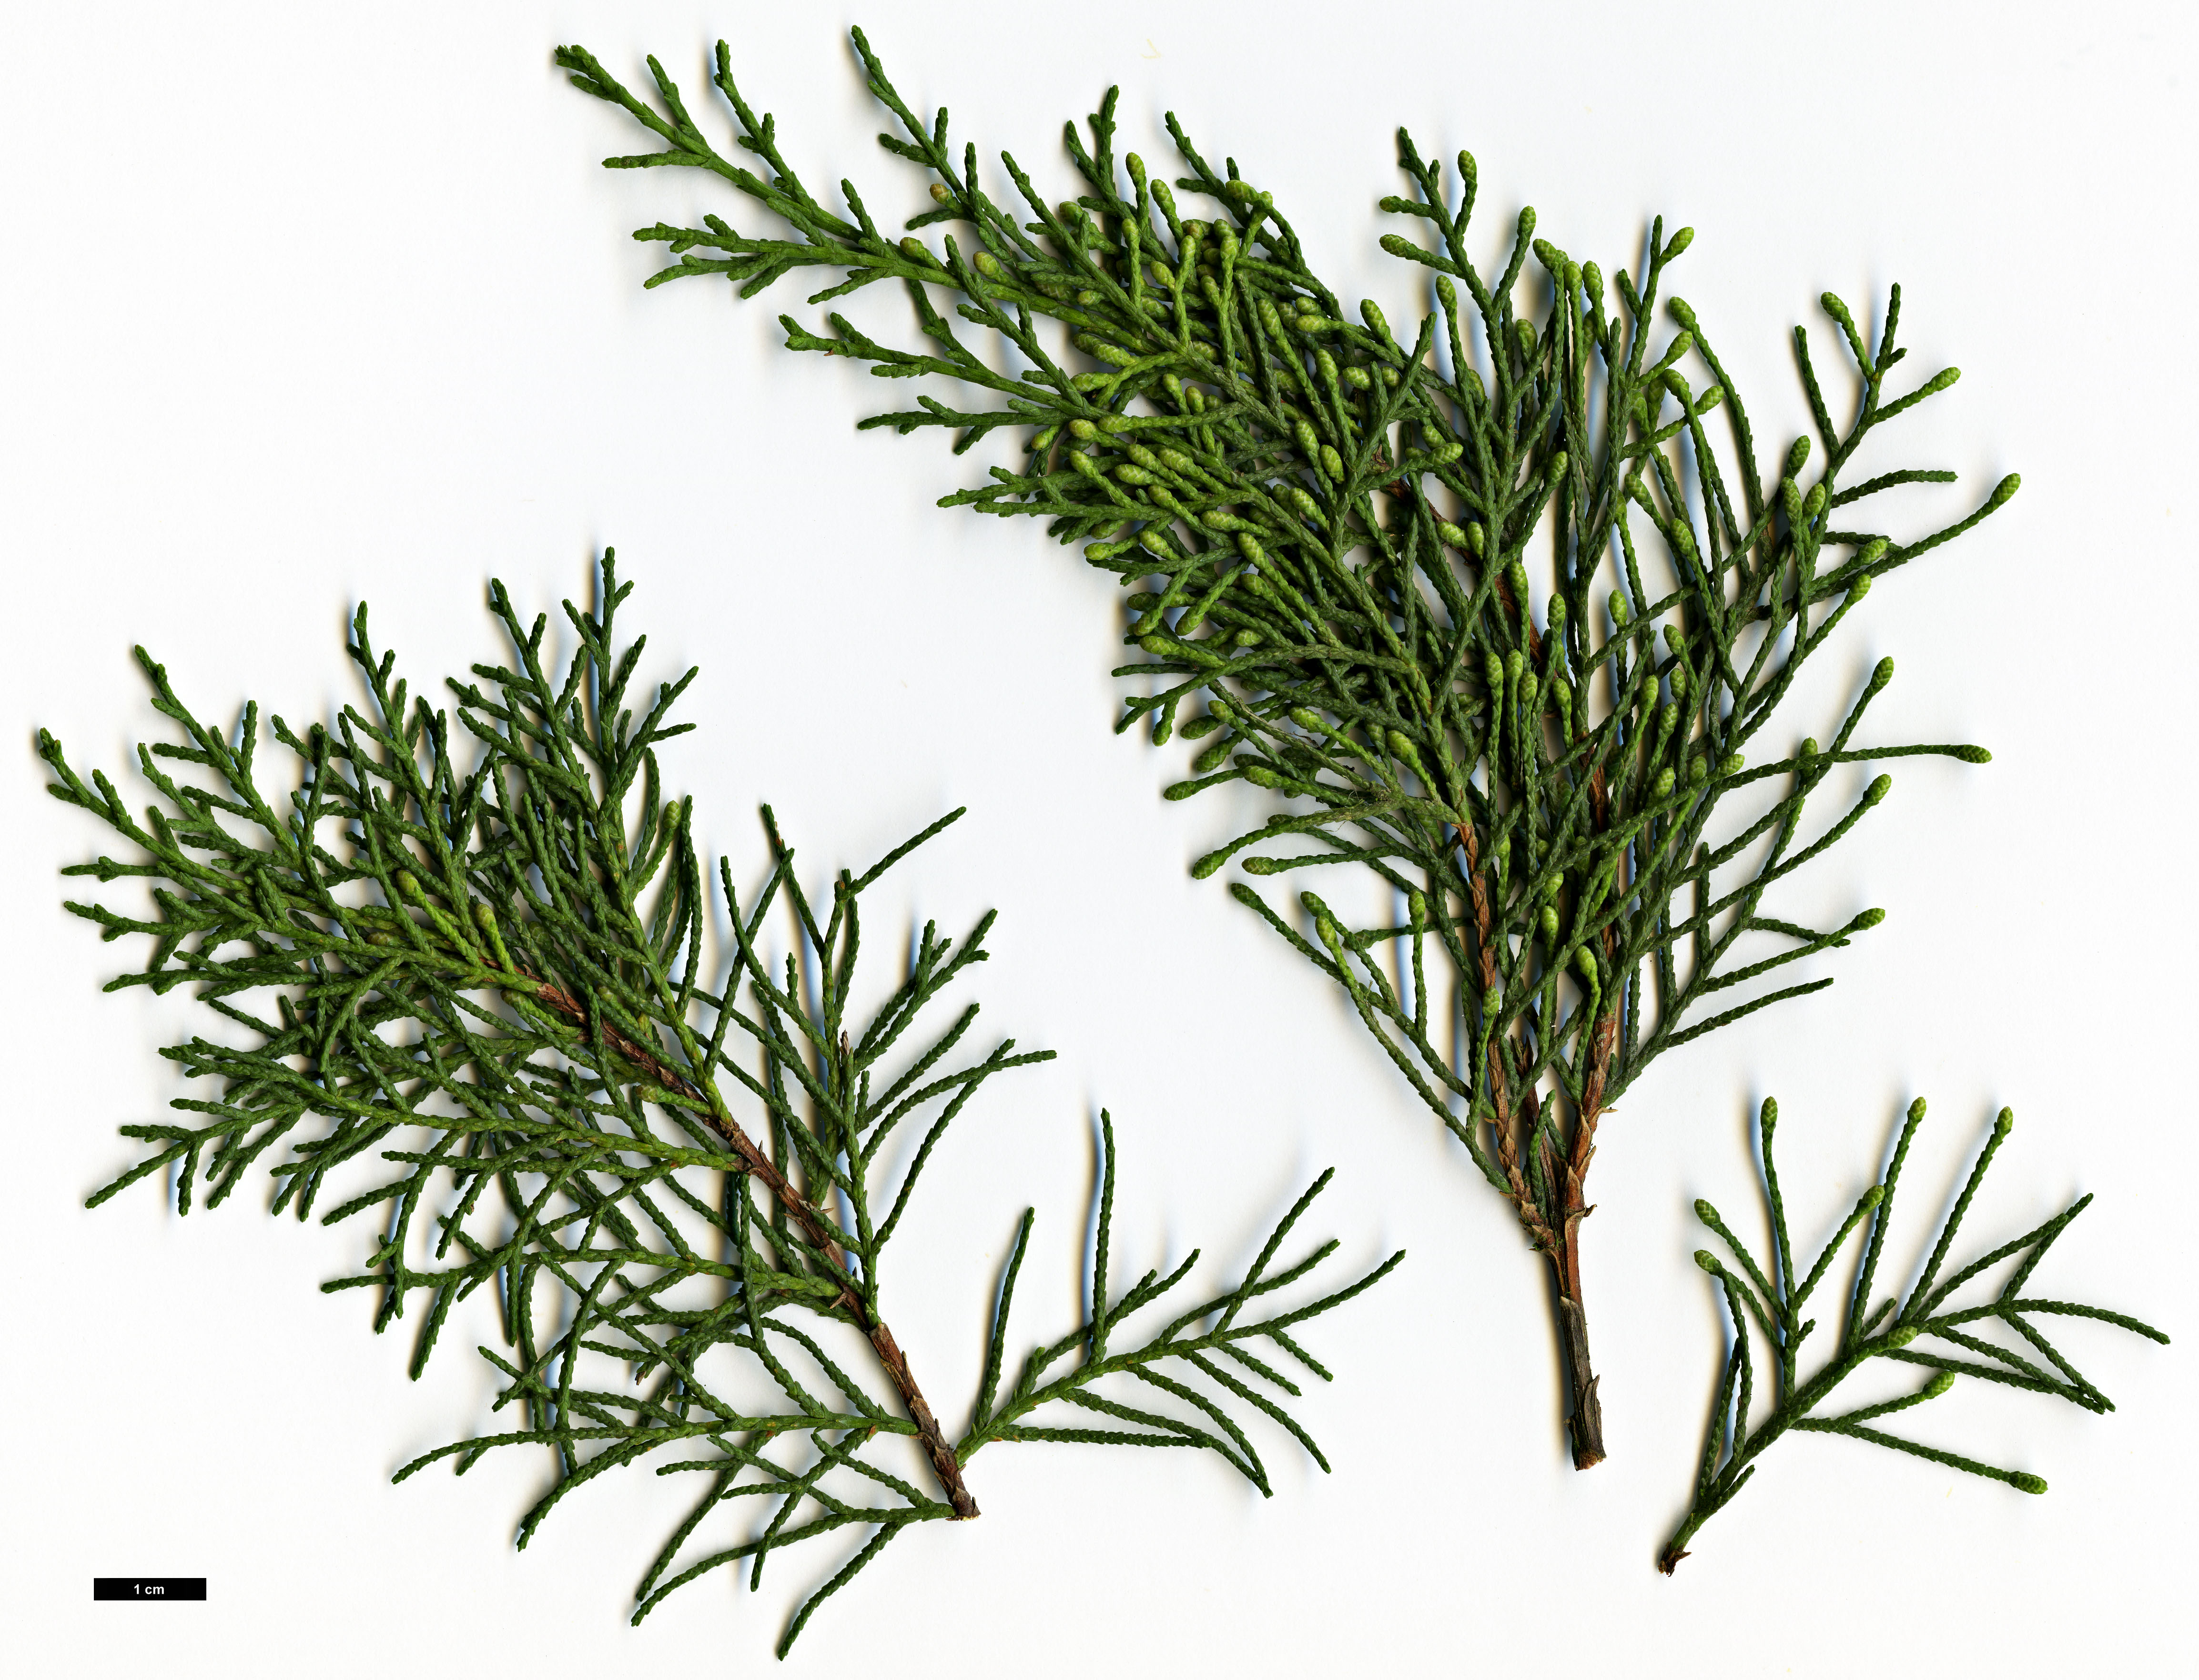 High resolution image: Family: Cupressaceae - Genus: Cupressus - Taxon: sempervirens